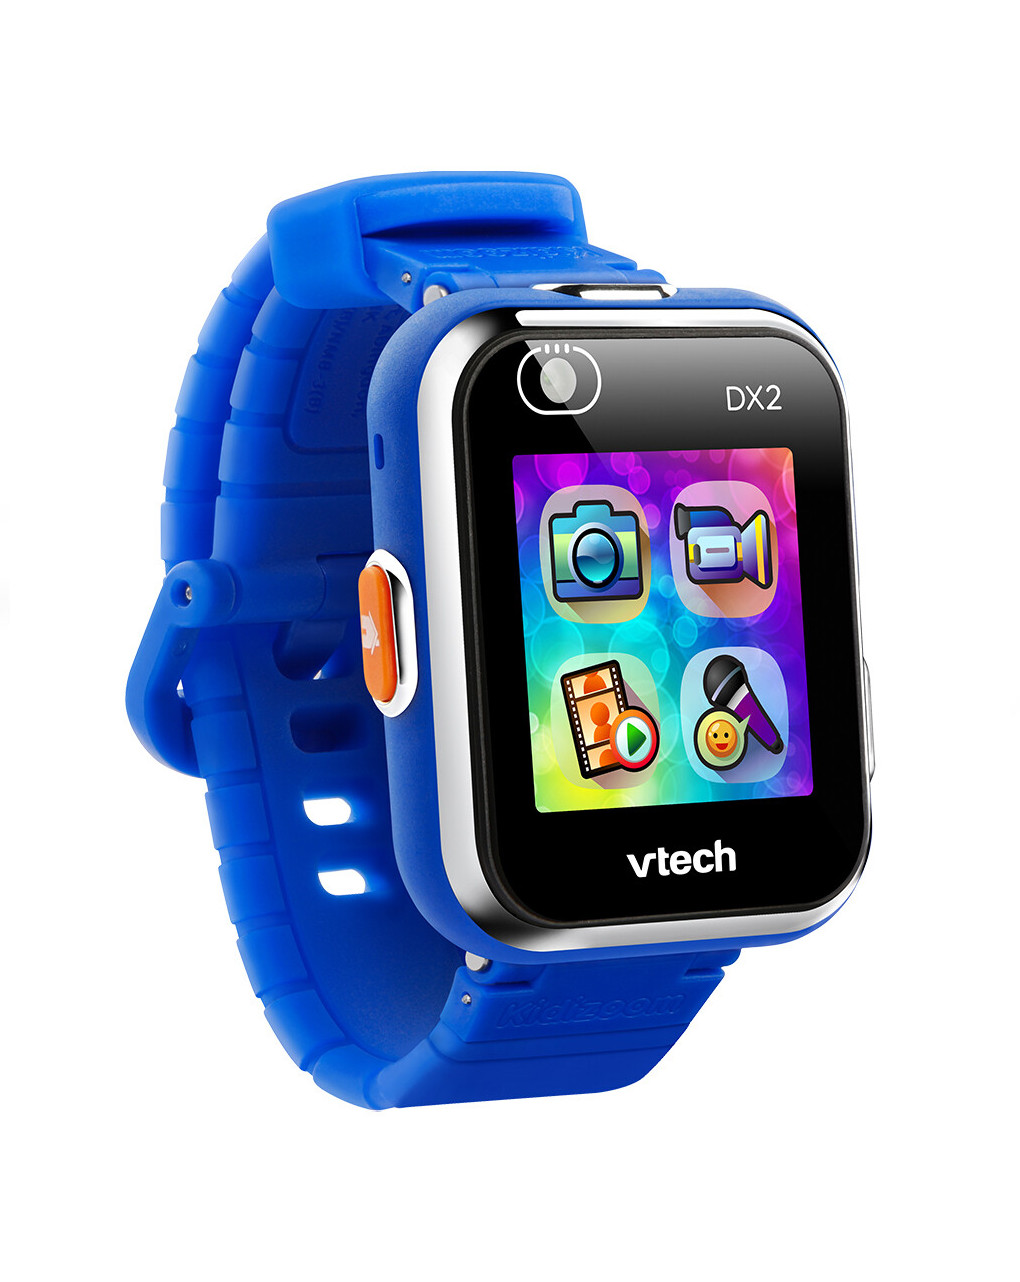 Kidizoom ® smartwatch dx2 blu 5-13 anni - vtech - VTECH